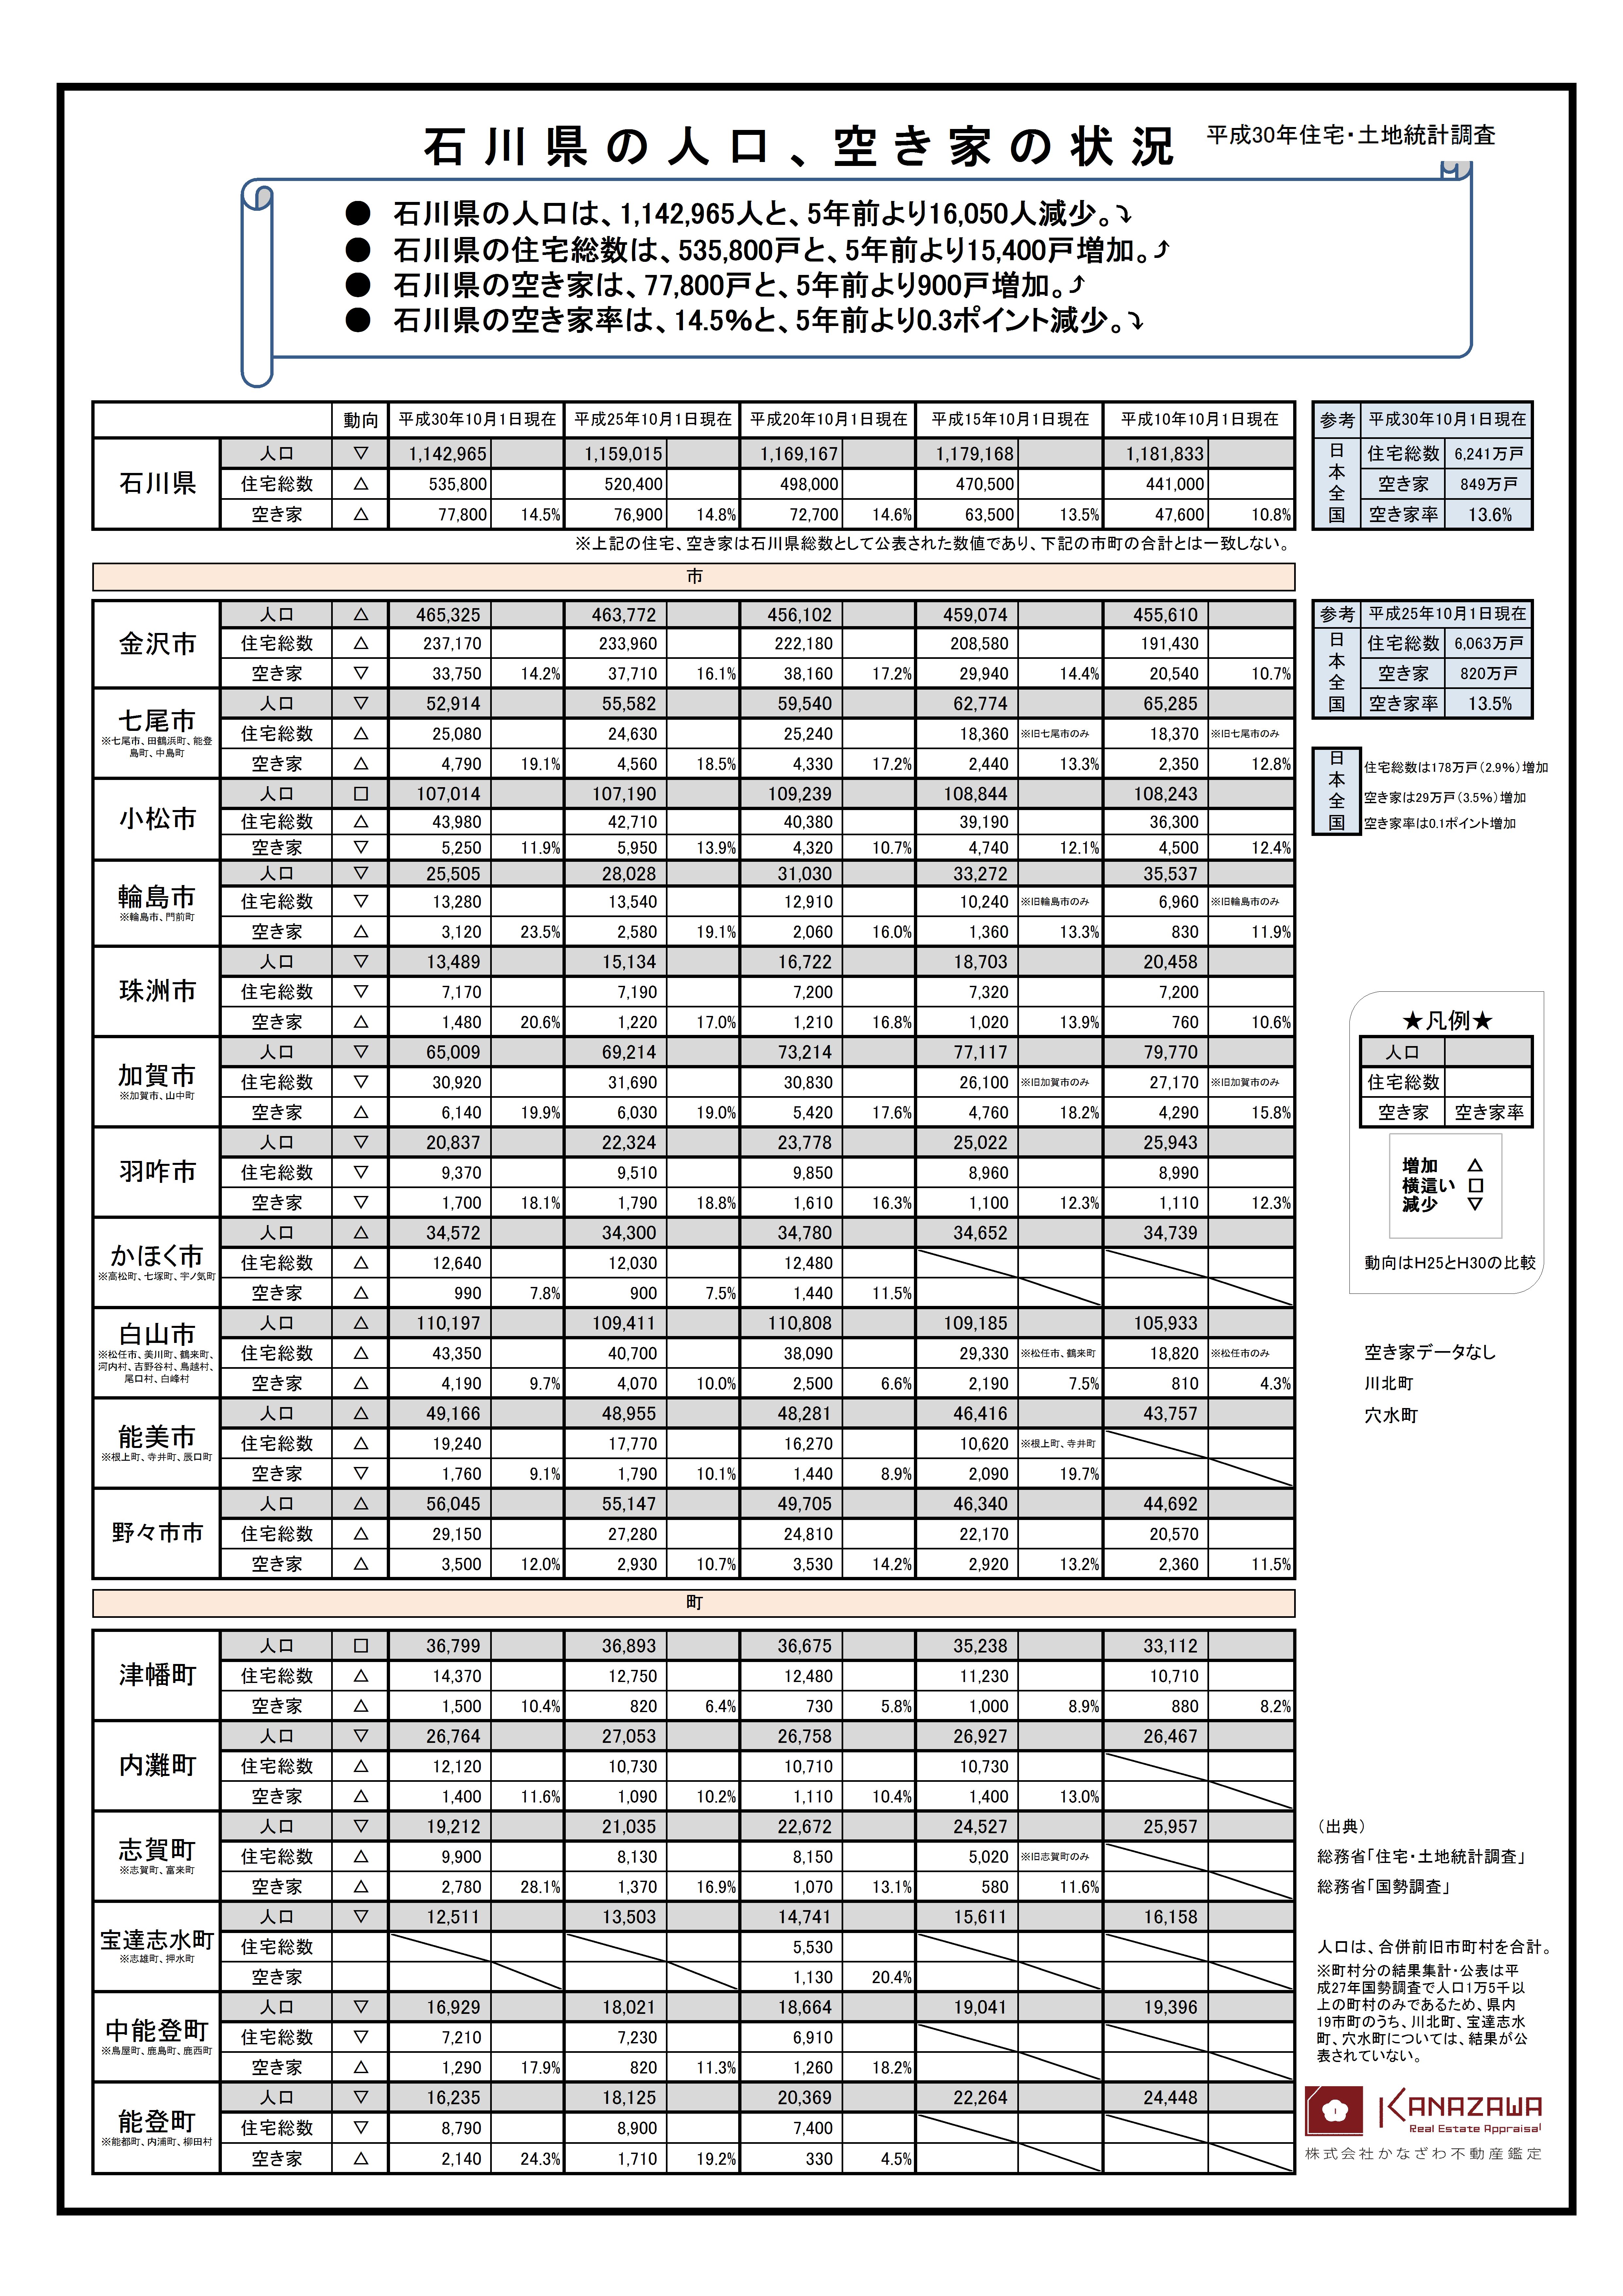 石川県空家状況20200618